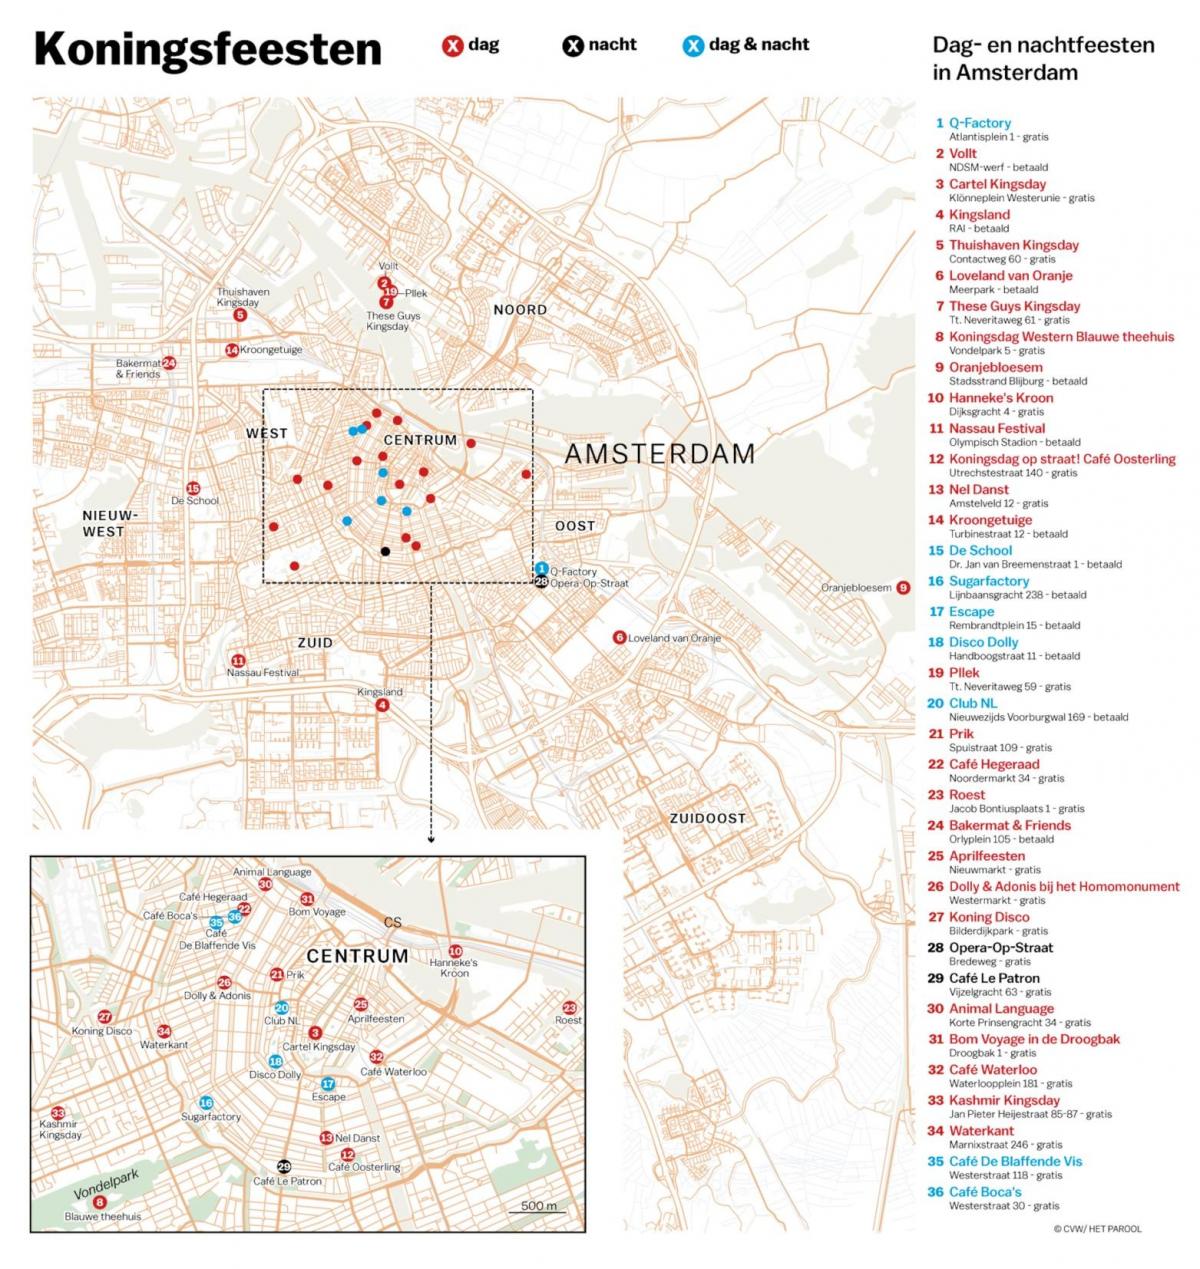 la mappa della vita notturna di Amsterdam